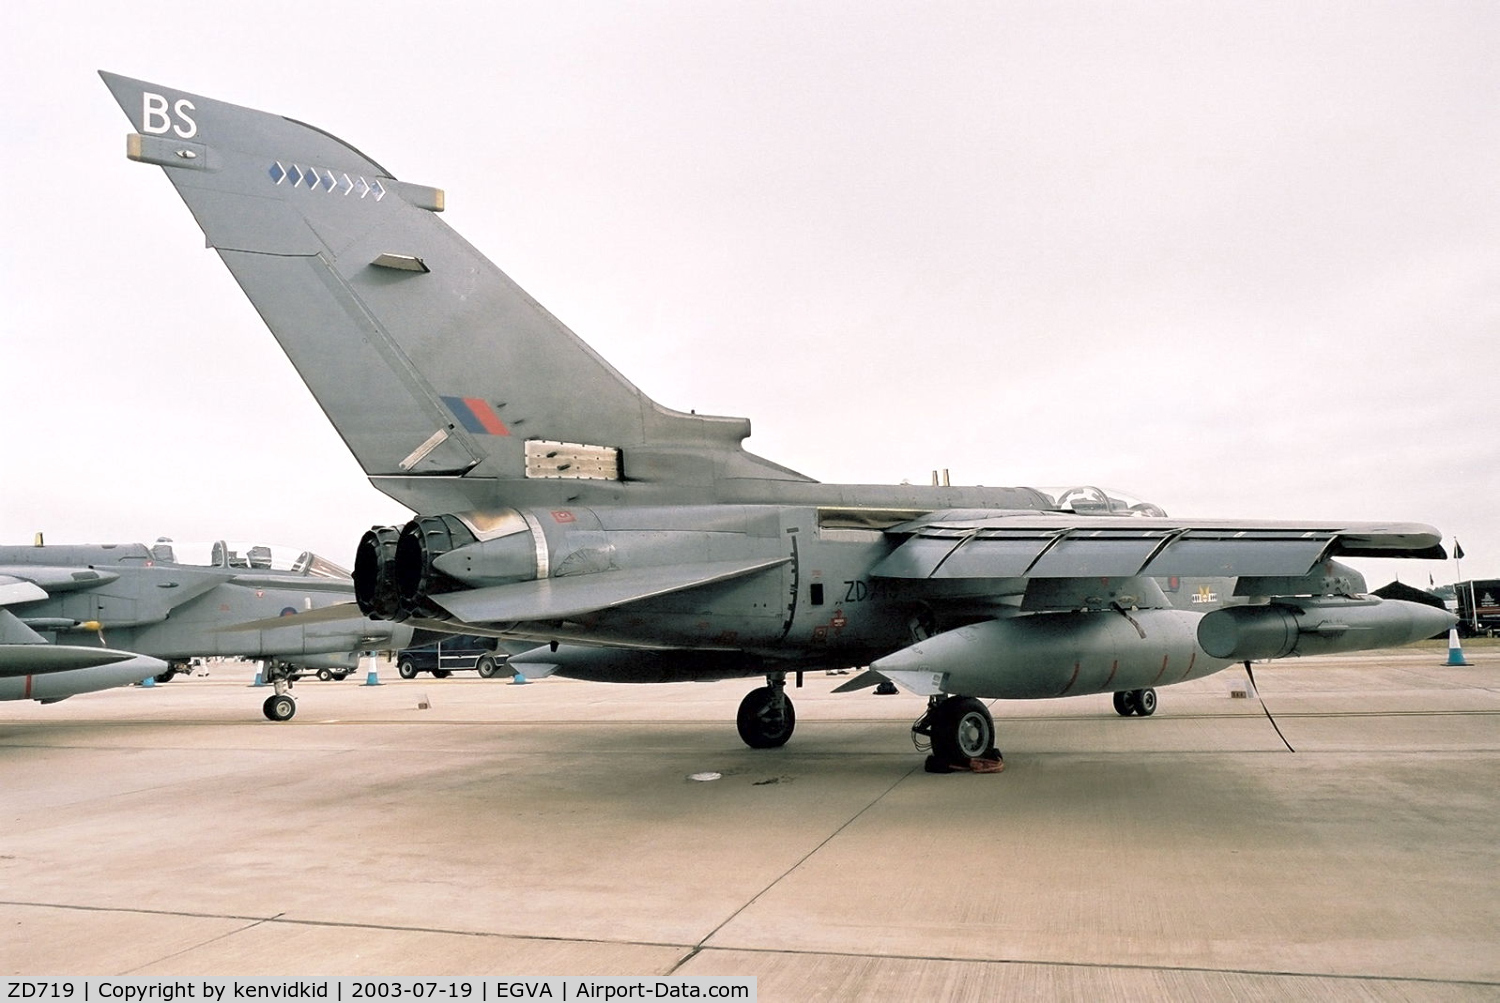 ZD719, 1984 Panavia Tornado GR.4 C/N 348/BS120/3161, Royal Air Force at RIAT.